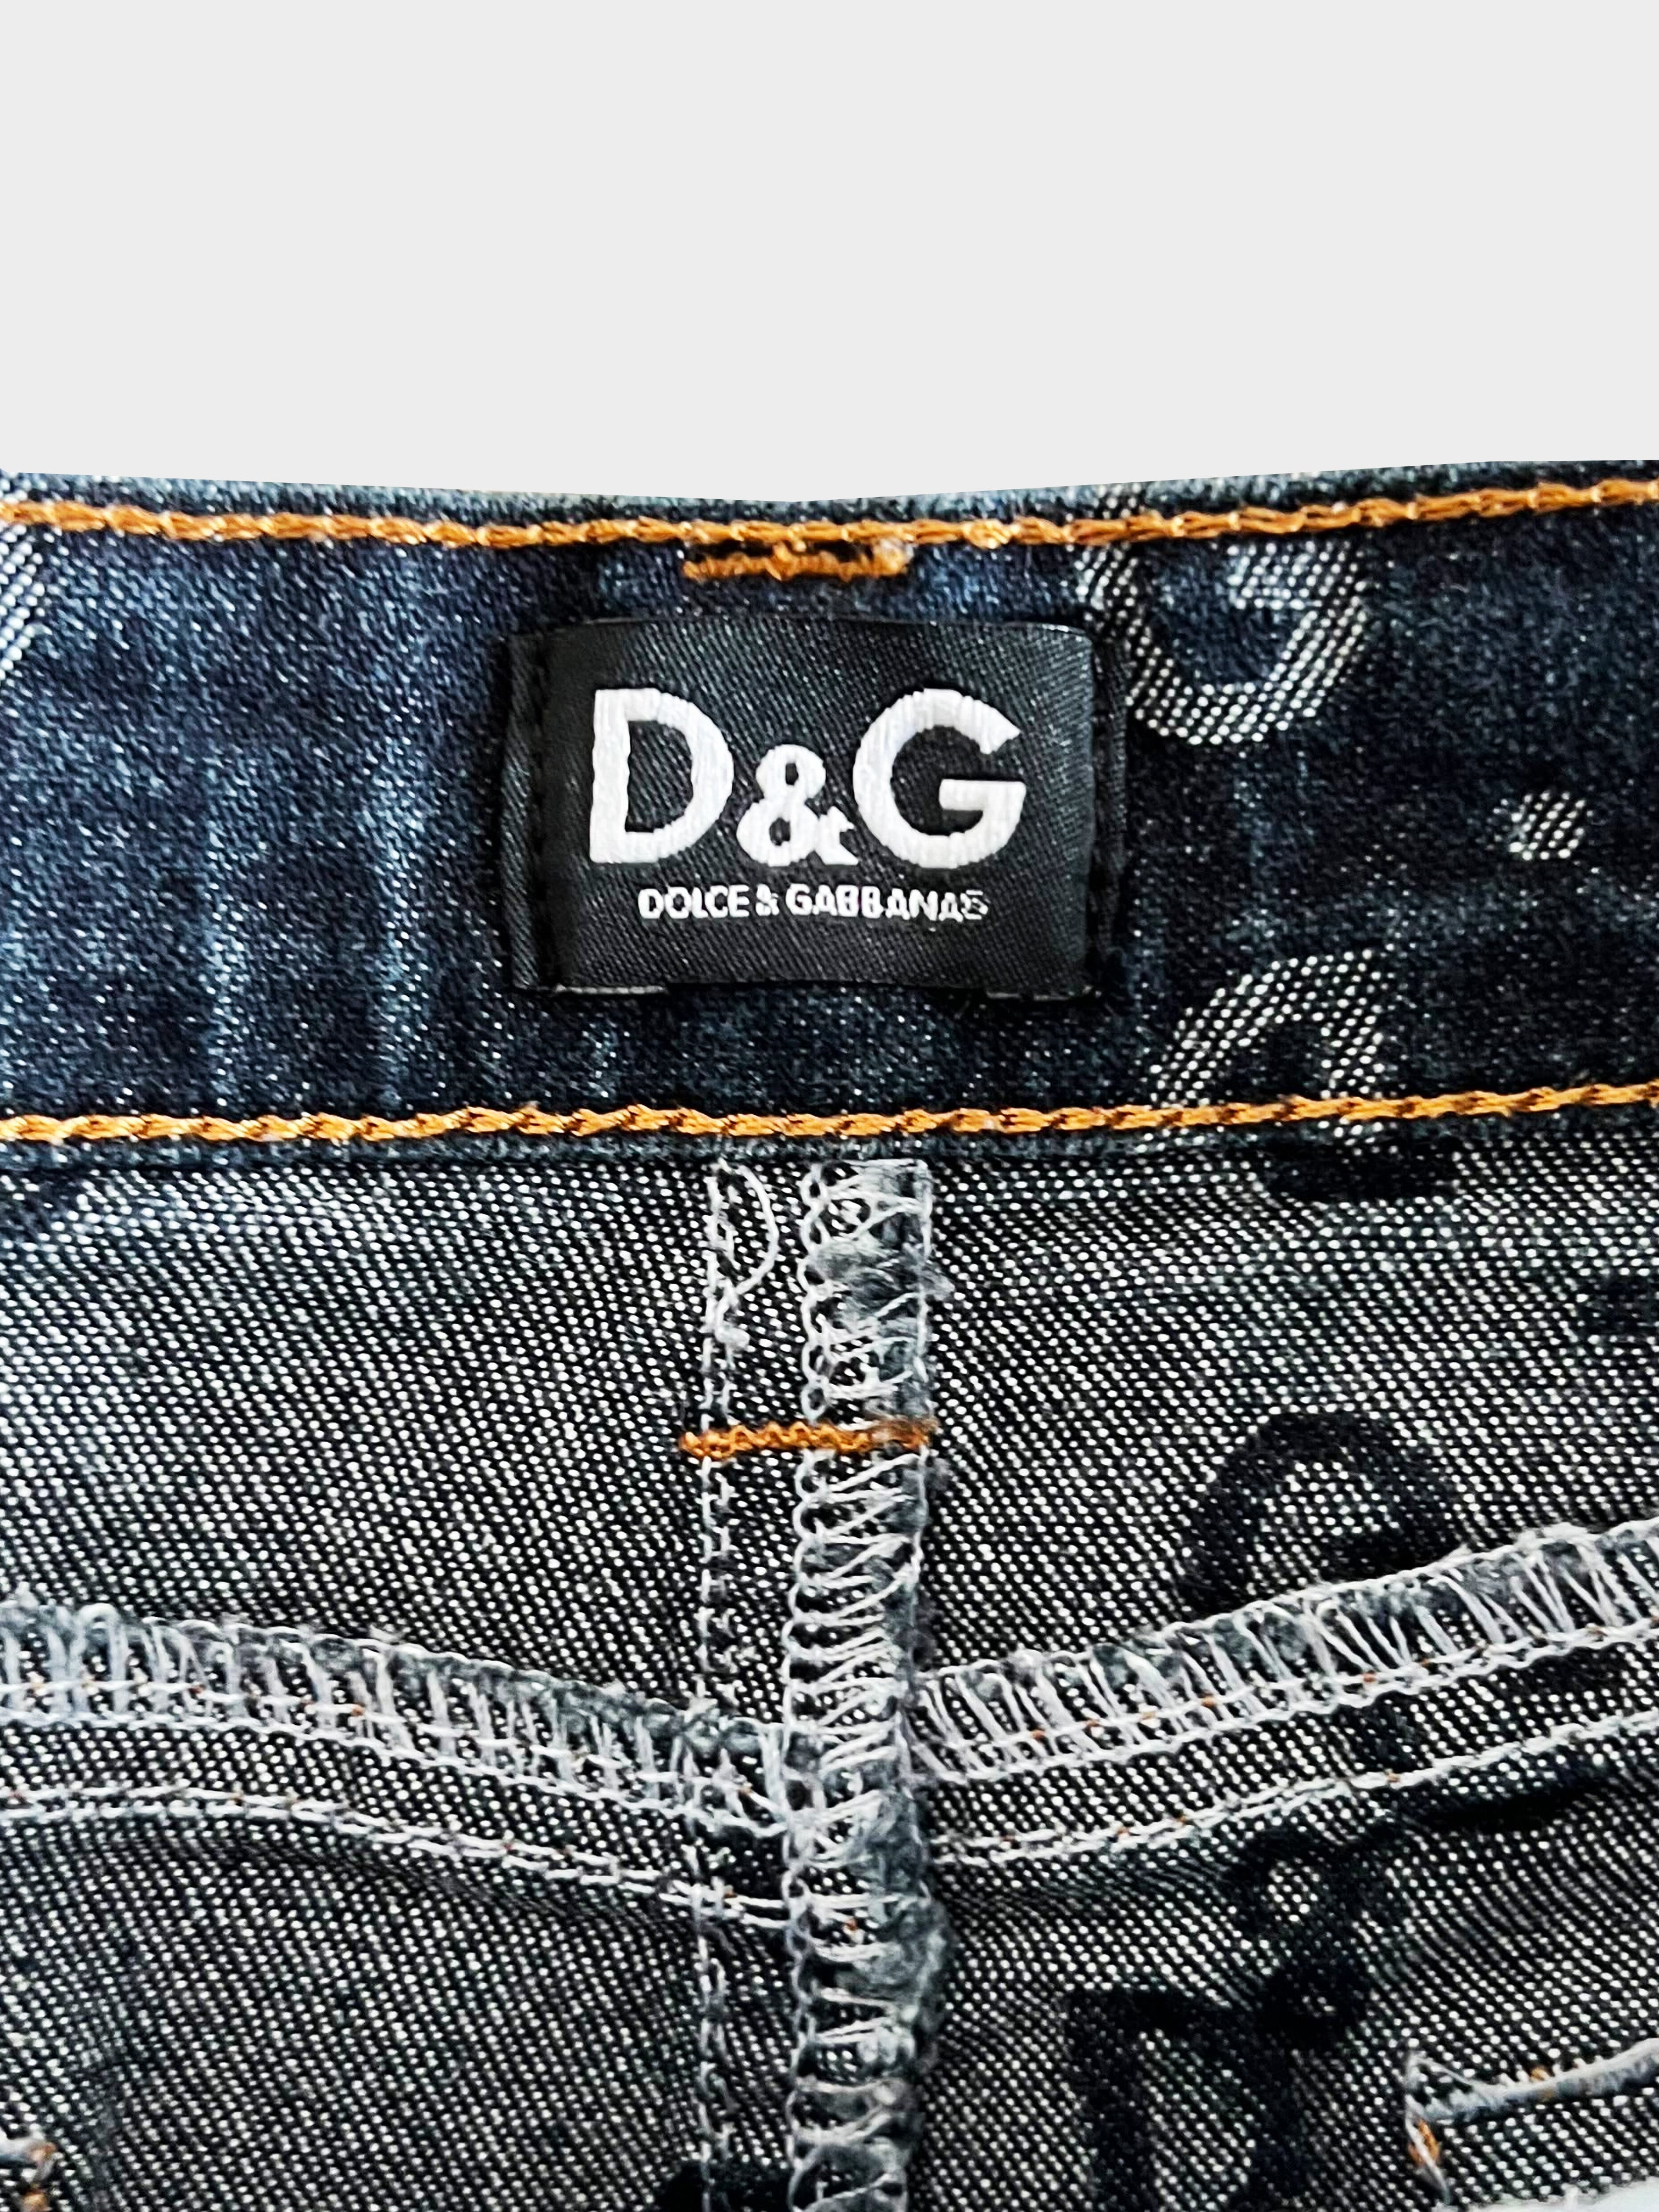 Dolce and Gabbana D&G 2000s Monogram Denim Miniskirt